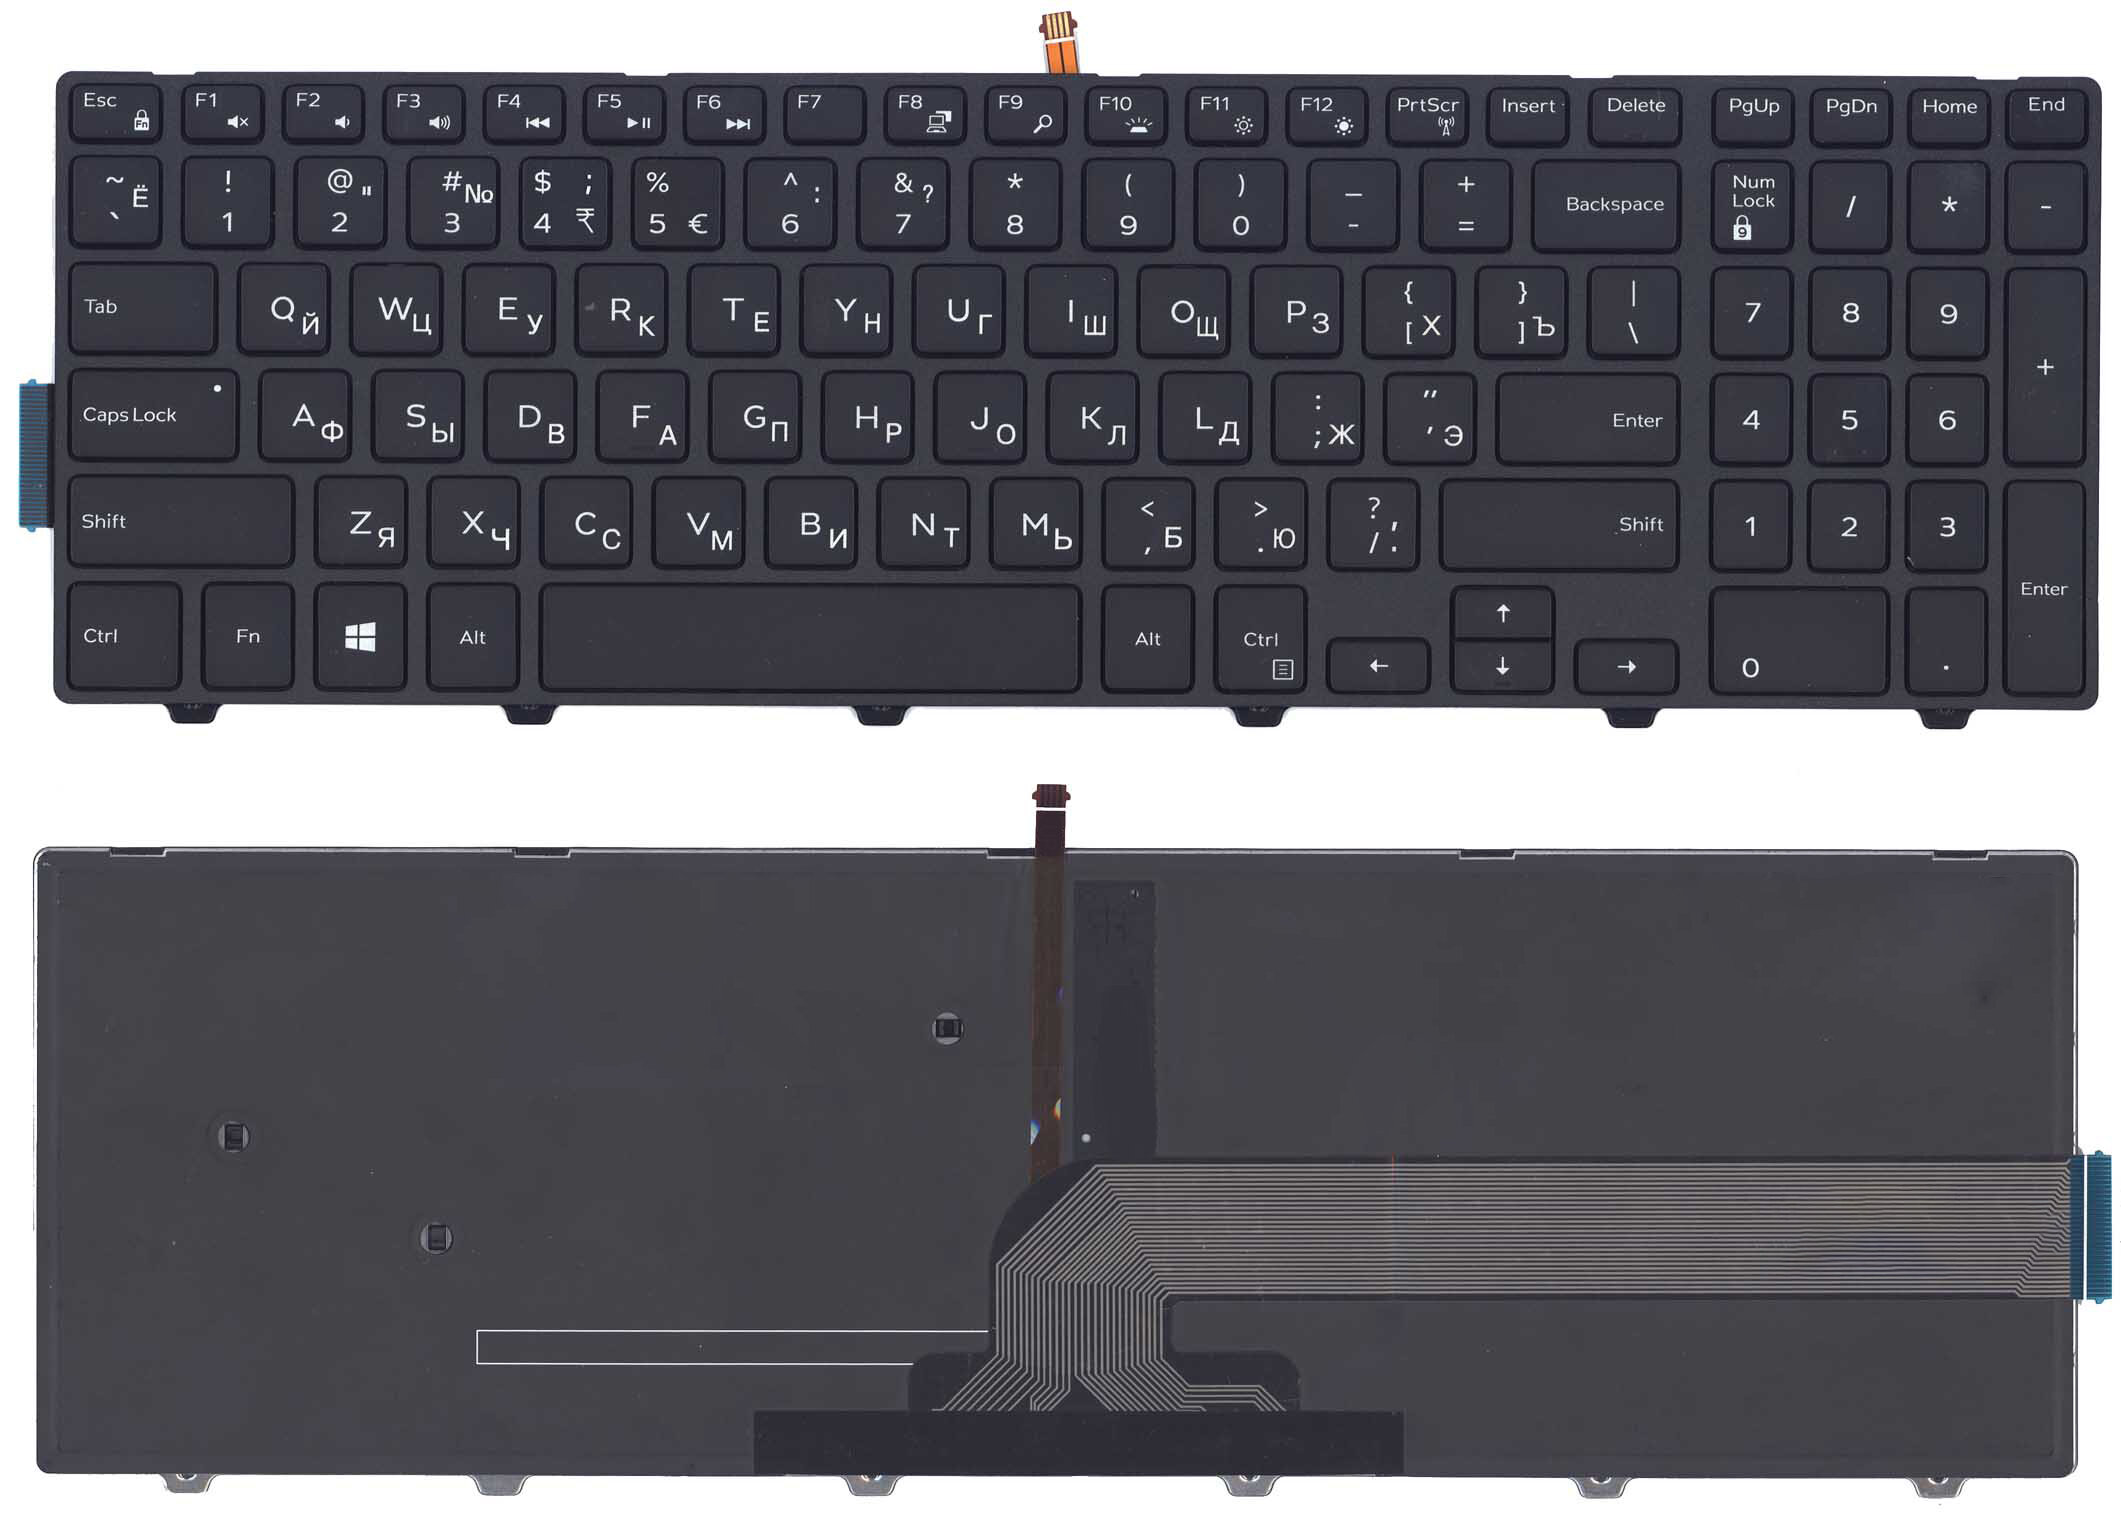 Клавиатура для ноутбука Dell Inspiron 15-3000 15-5000 5547 5521 5542 черная с подсветкой